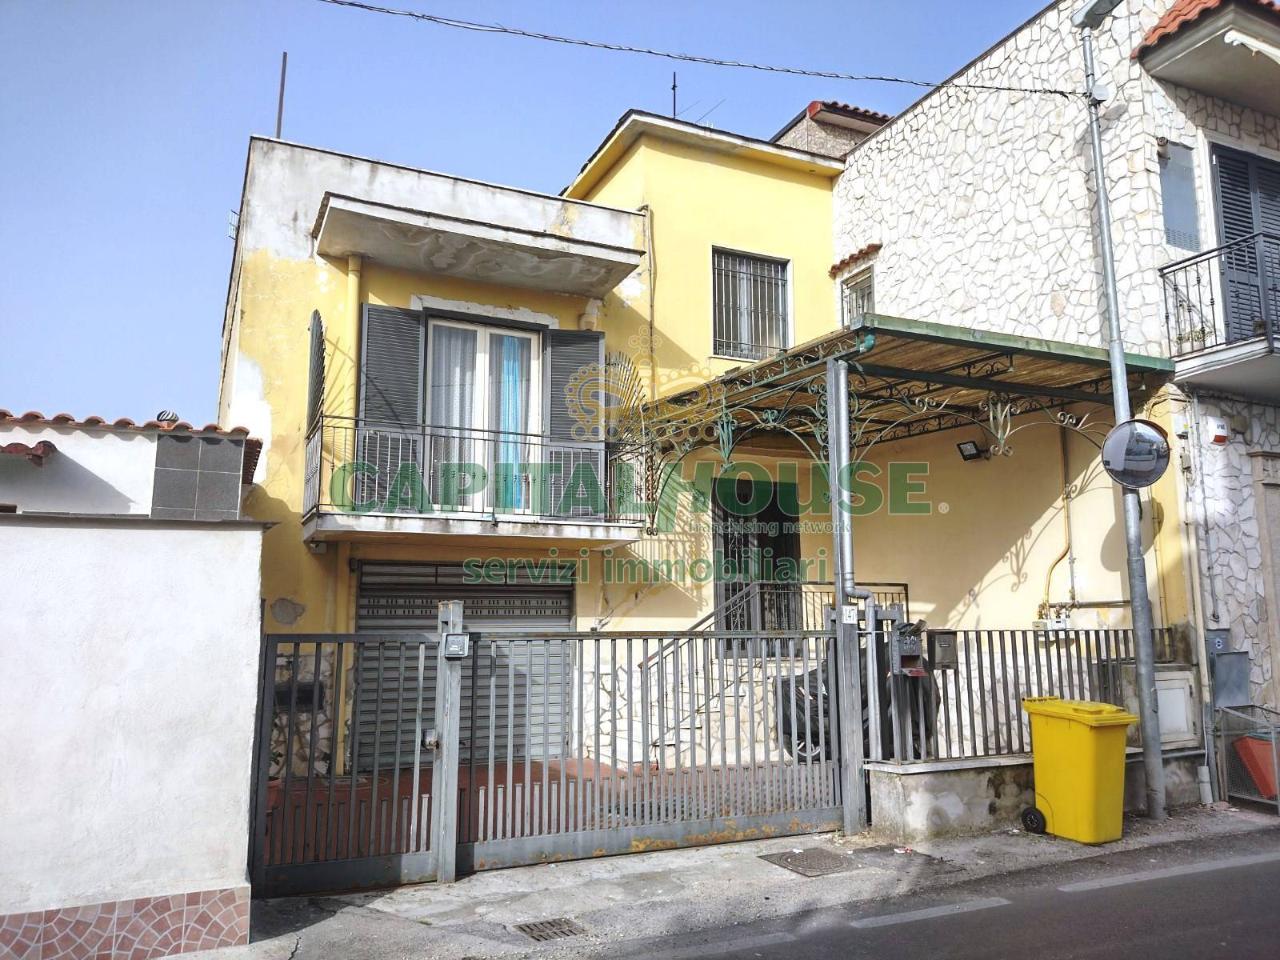 Appartamento in vendita a Saviano